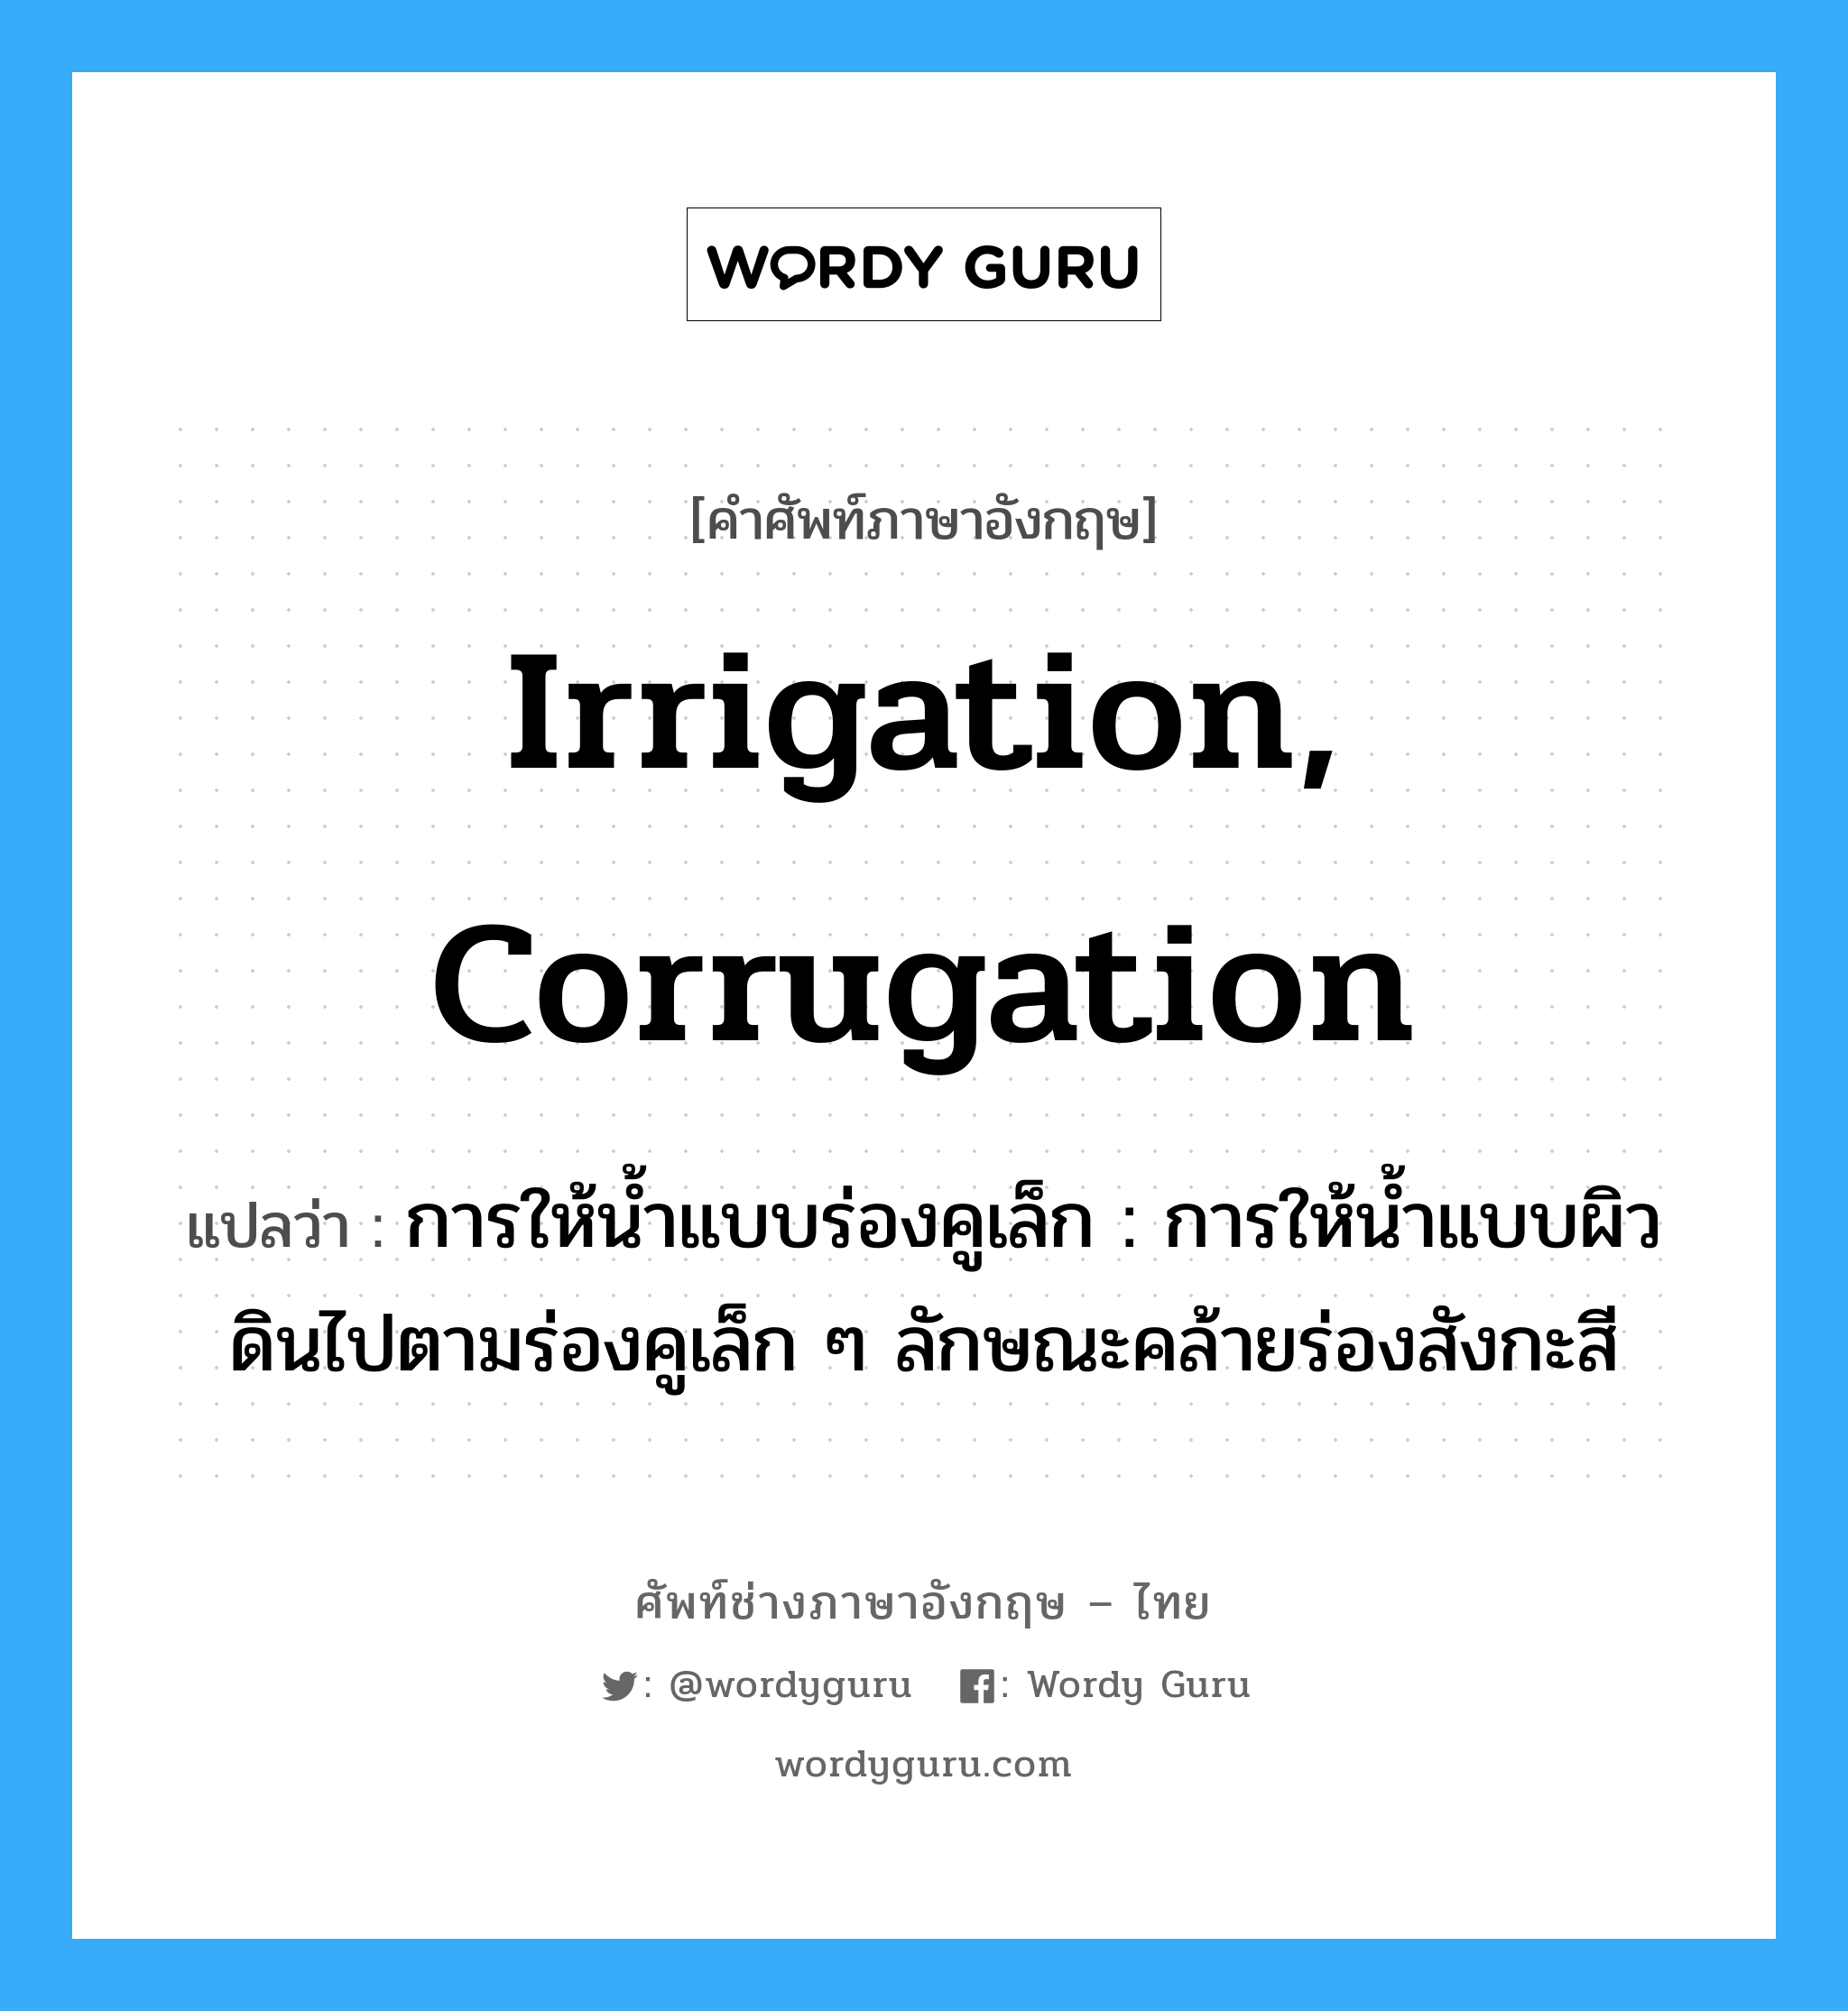 irrigation, corrugation แปลว่า?, คำศัพท์ช่างภาษาอังกฤษ - ไทย irrigation, corrugation คำศัพท์ภาษาอังกฤษ irrigation, corrugation แปลว่า การให้น้ำแบบร่องคูเล็ก : การให้น้ำแบบผิวดินไปตามร่องคูเล็ก ๆ ลักษณะคล้ายร่องสังกะสี